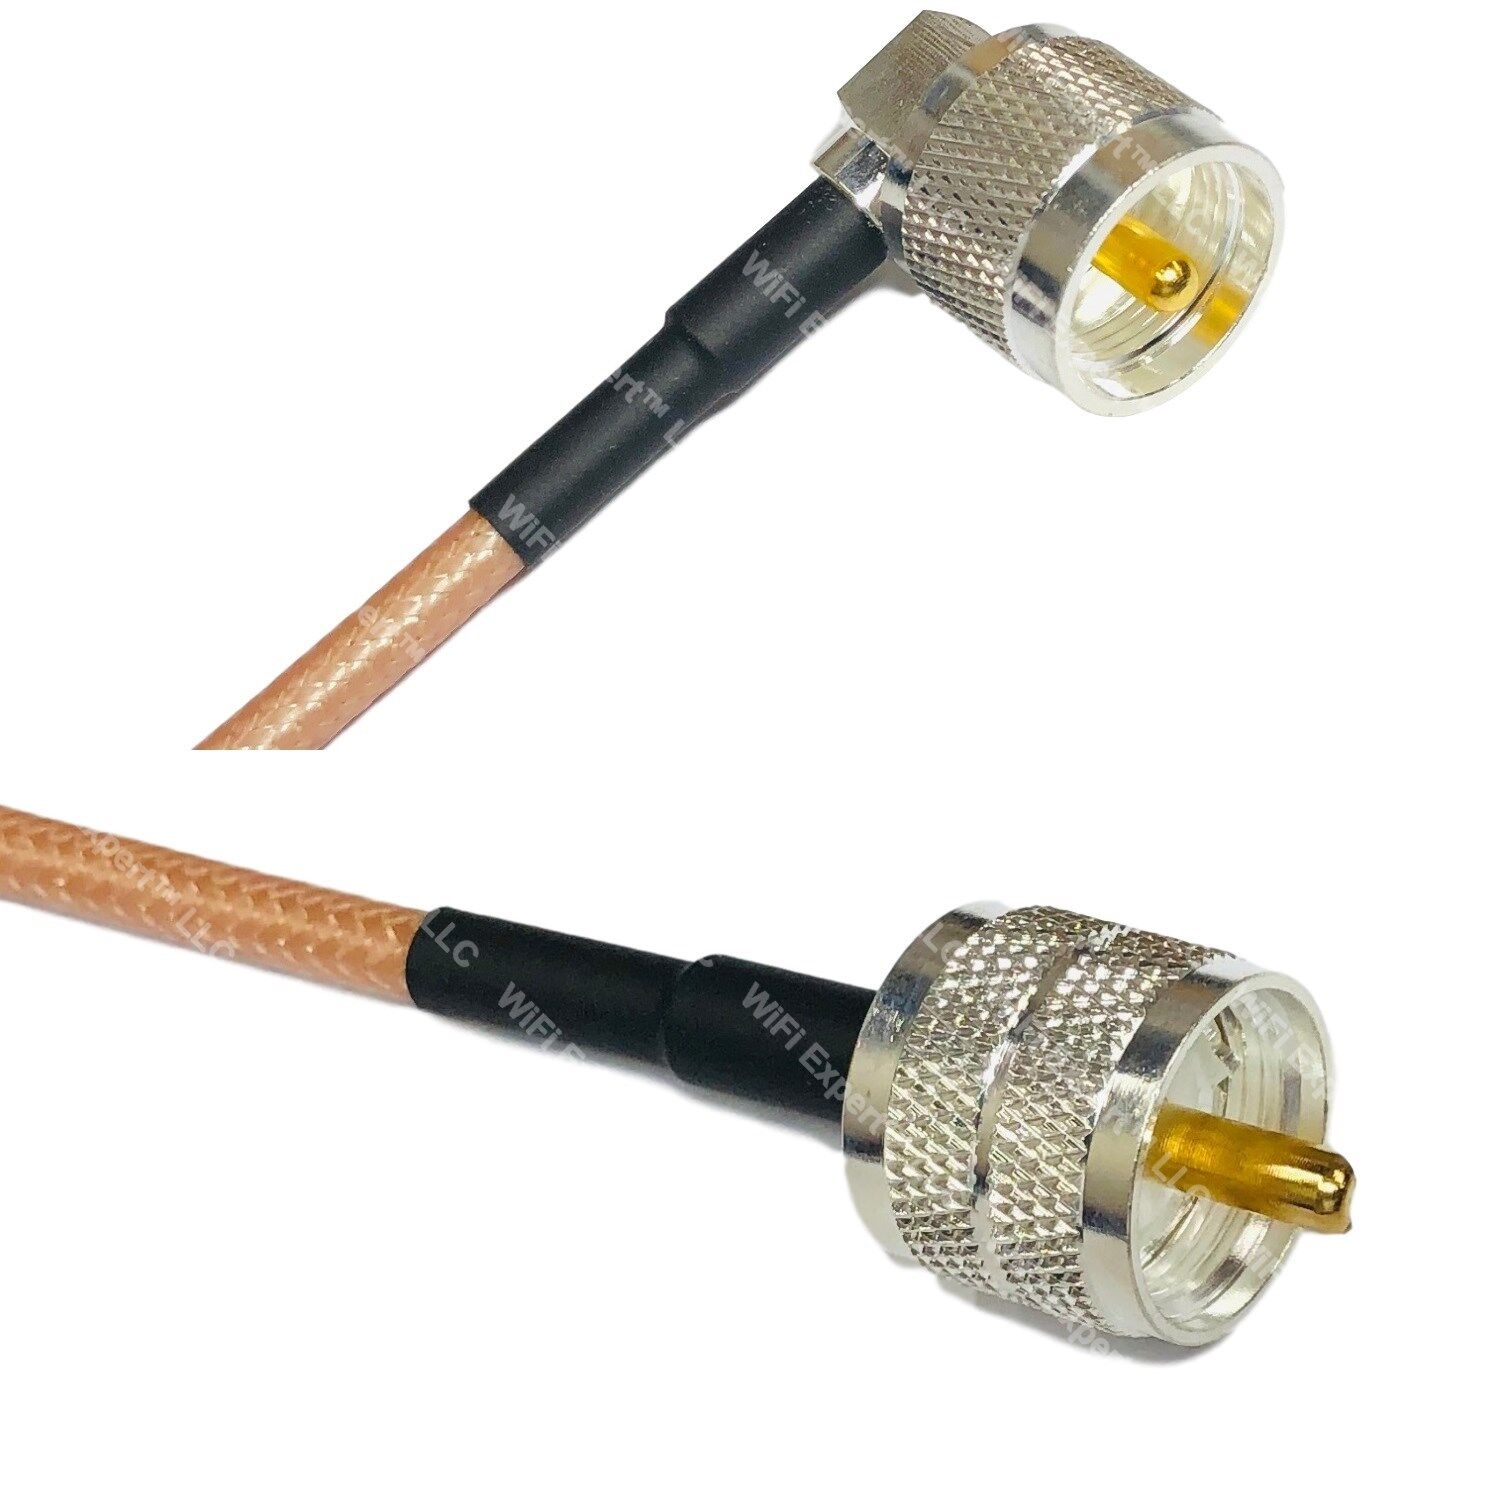 RG400 Silver UHF Male Angle to PL259 UHF Male Coax RF Cable USA Lot Wysokiej jakości sprzedaż wysyłkowa